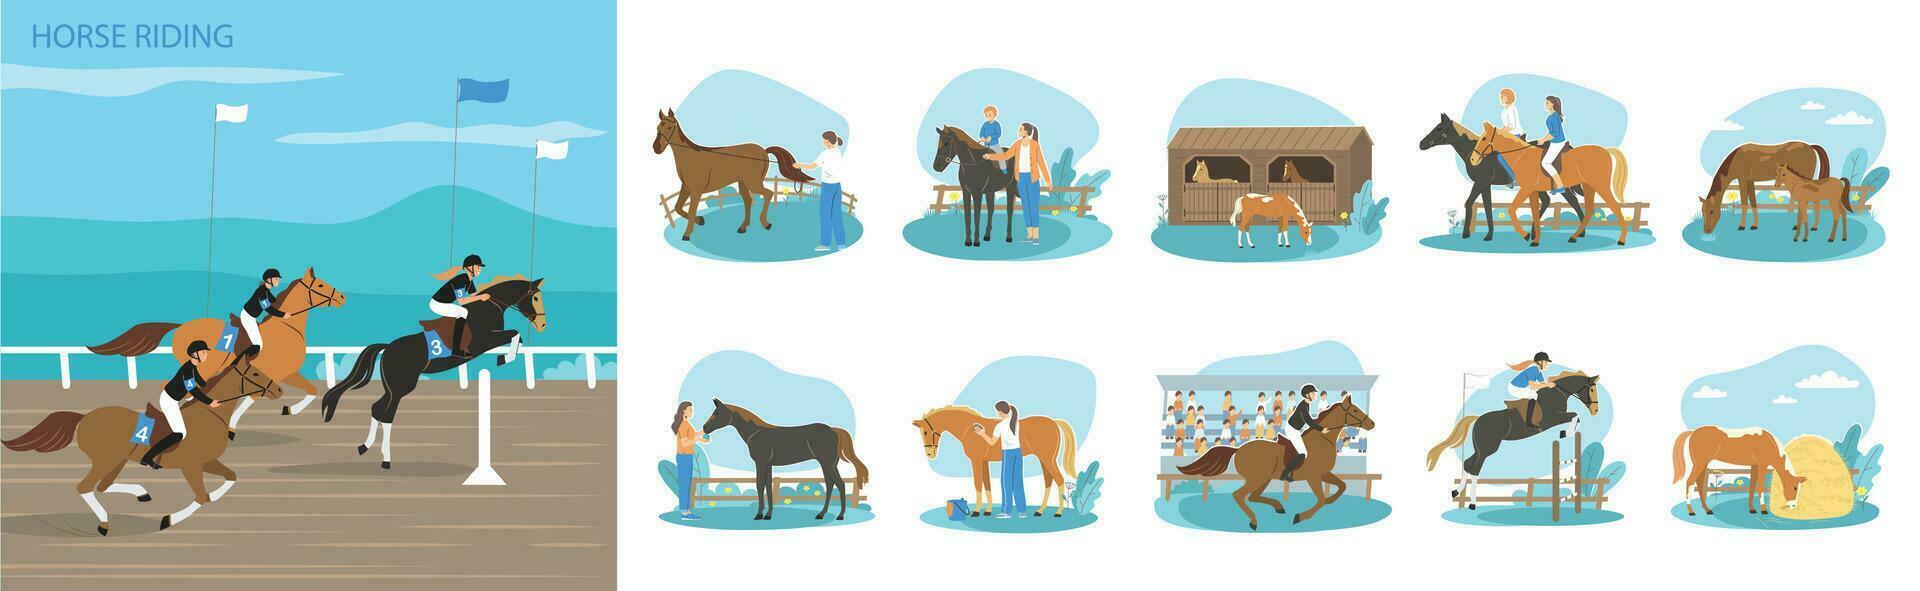 Horse Riding Composition Set vector